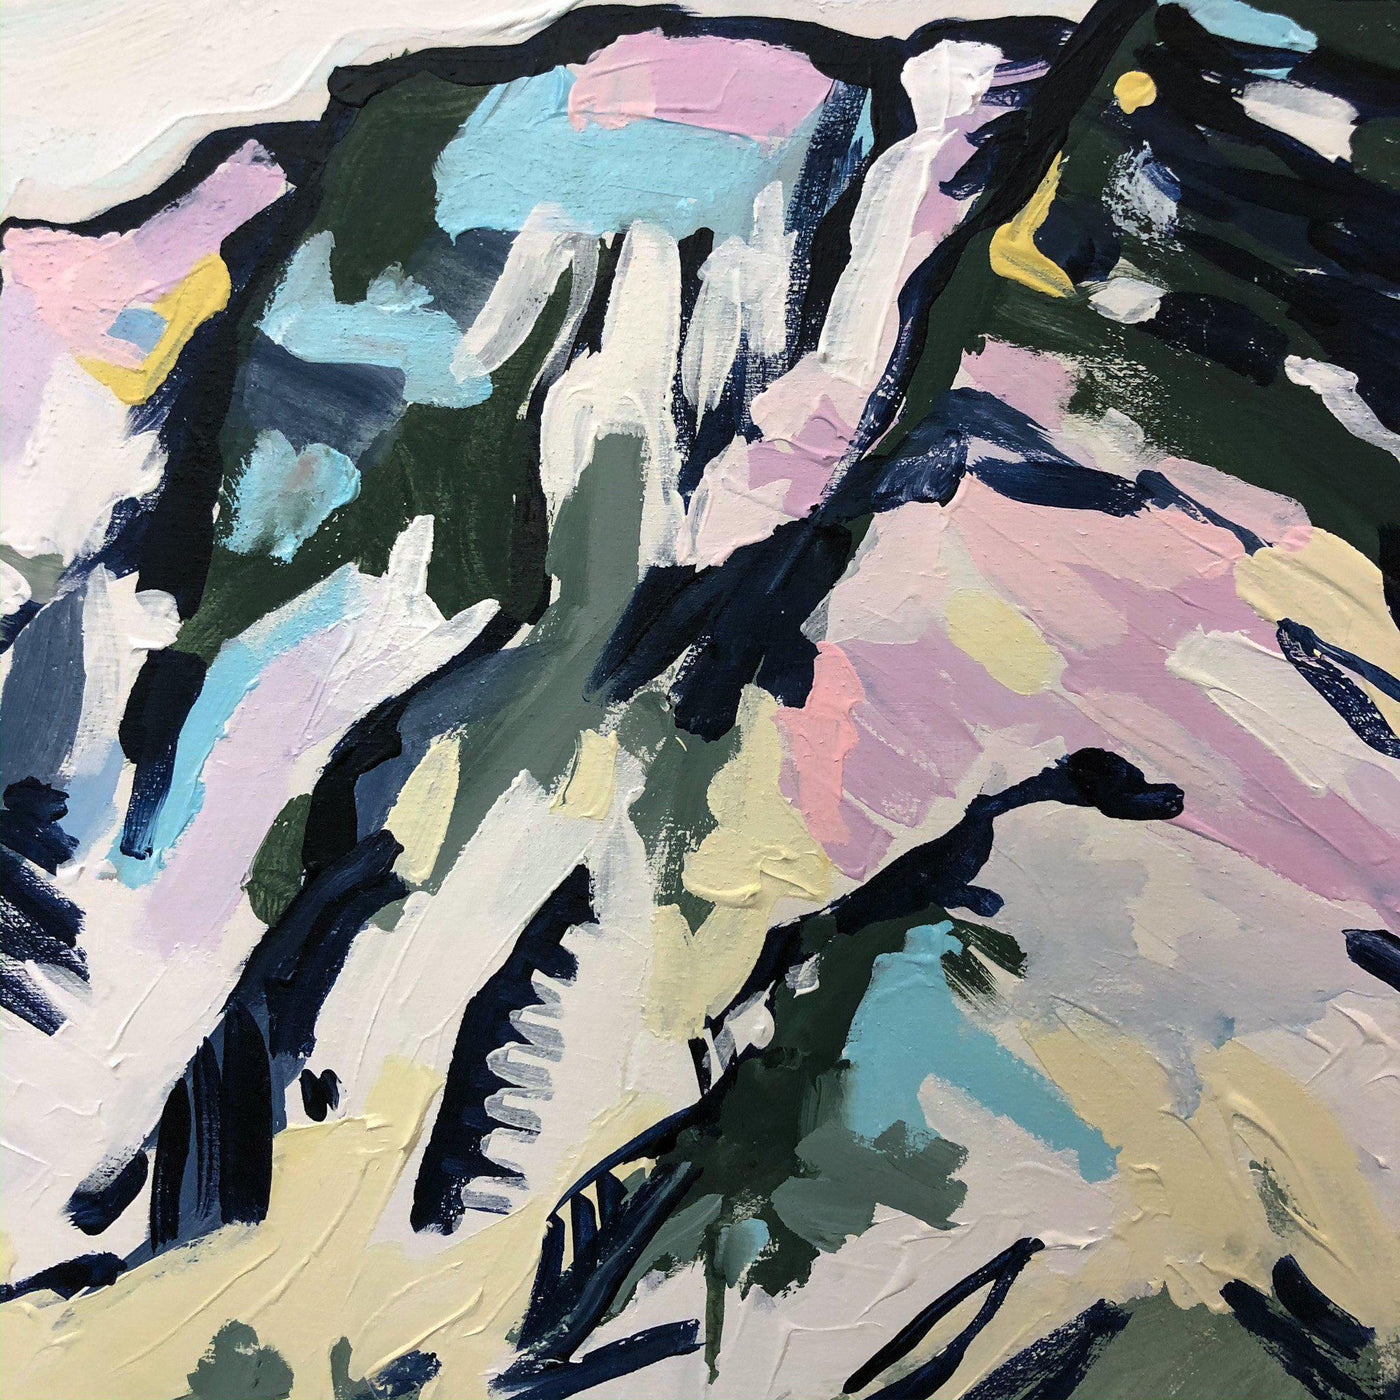 Mountain painting - Kananaskis II, 24x24 abstract landscape by Amy Dixon Edmonton, Alberta artist